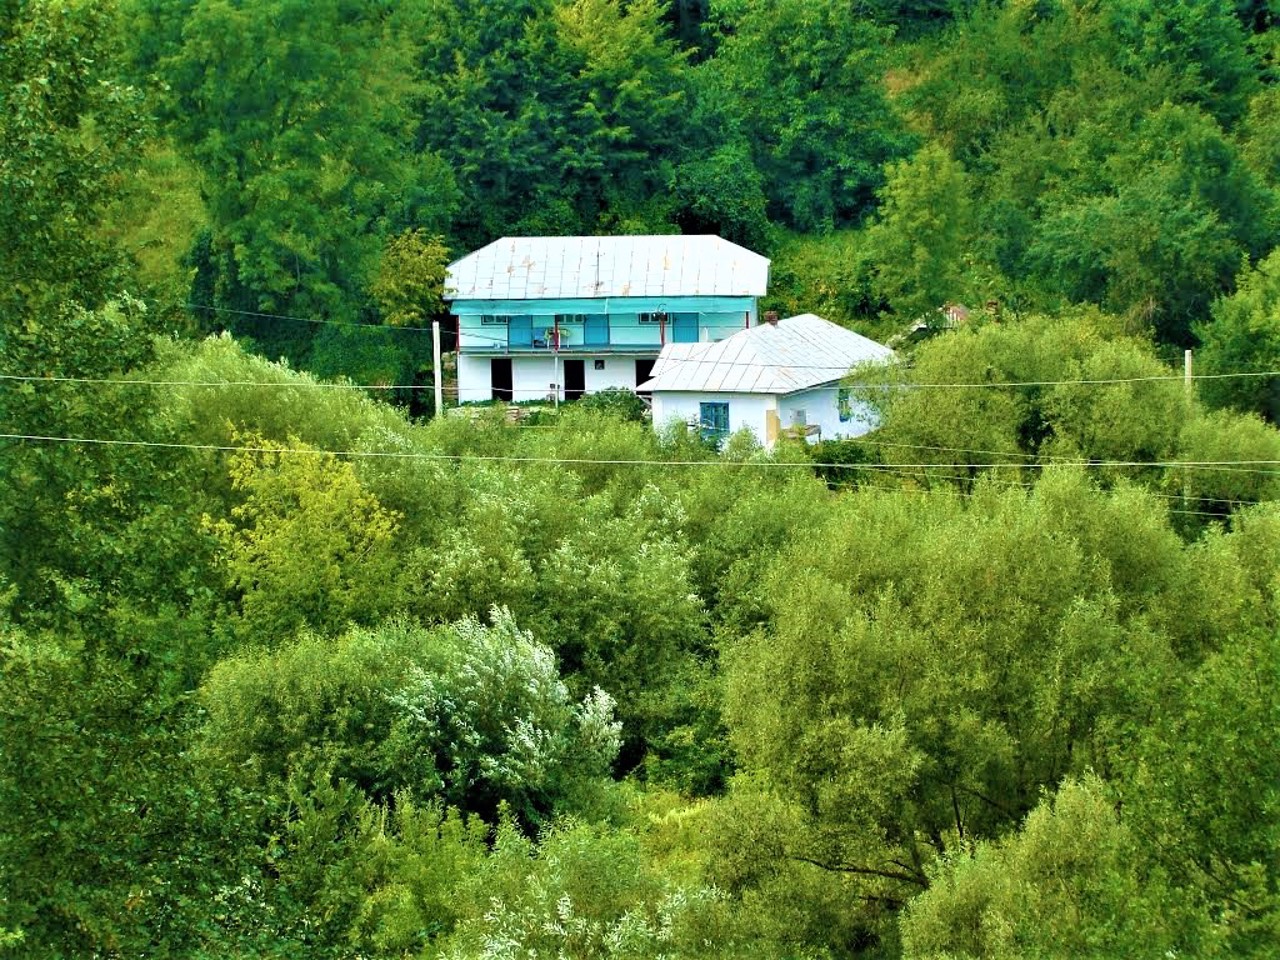 Kryntsiliv village